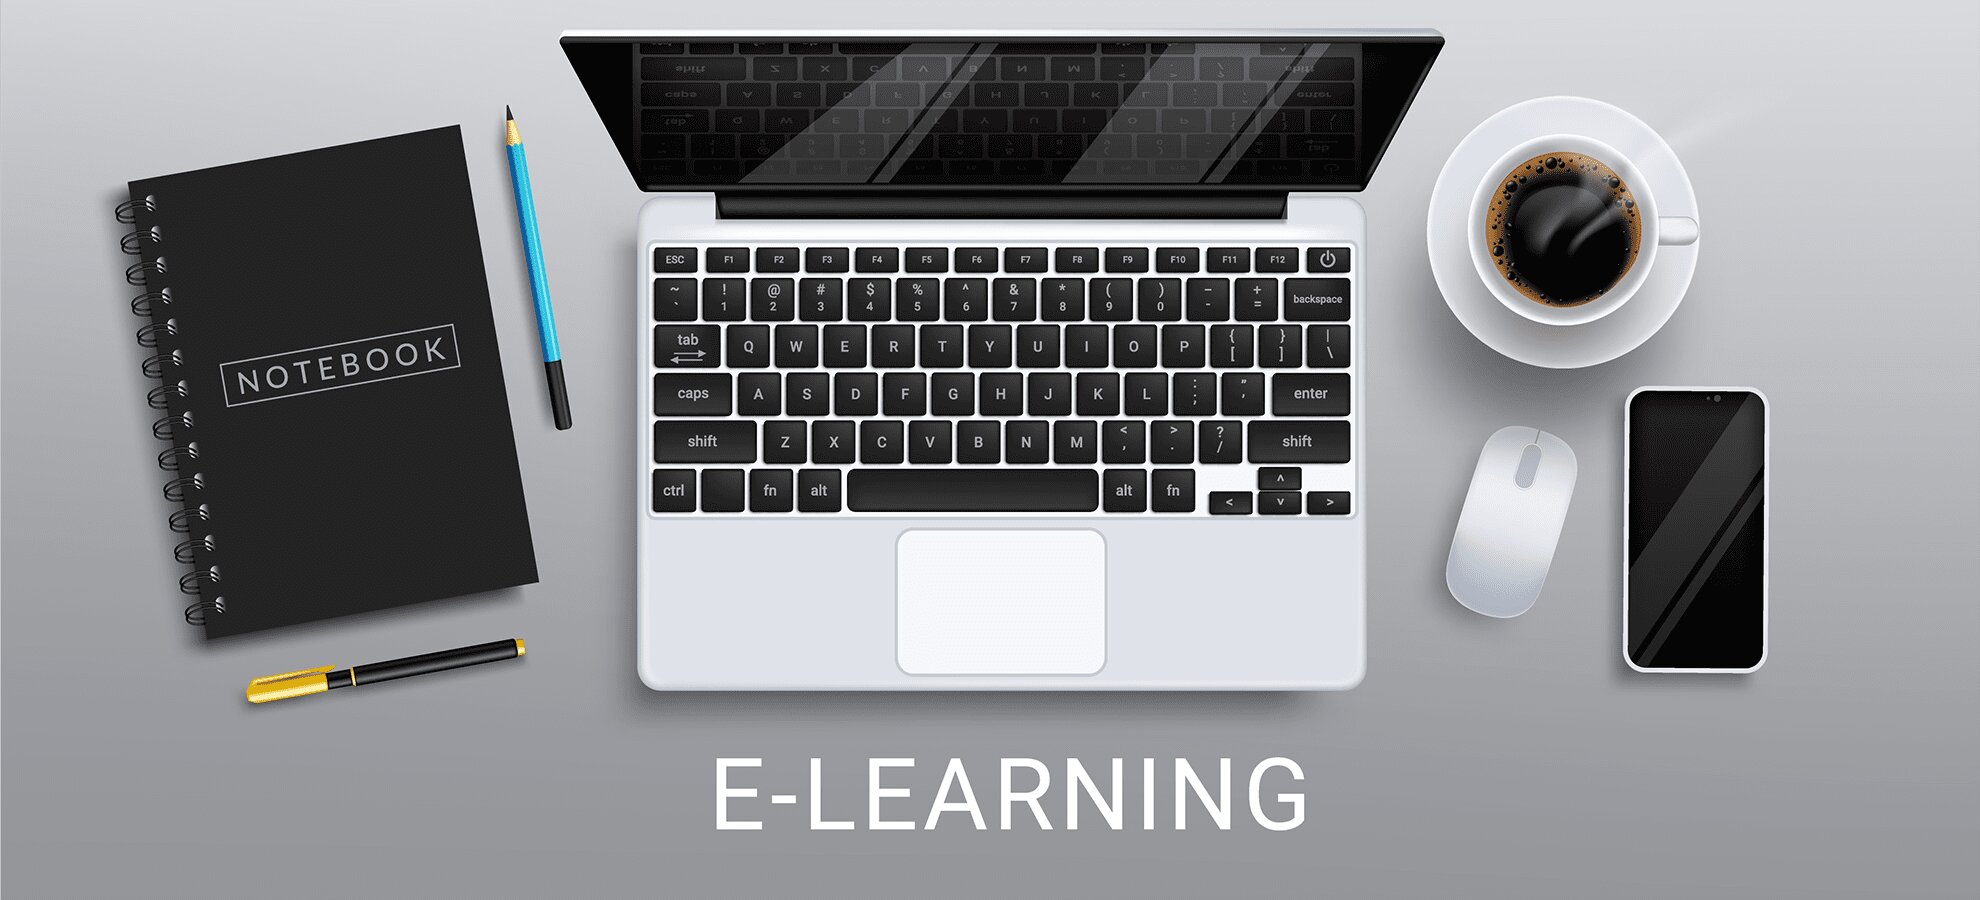 Corsi di formazione a distanza,in modalità E-learning.